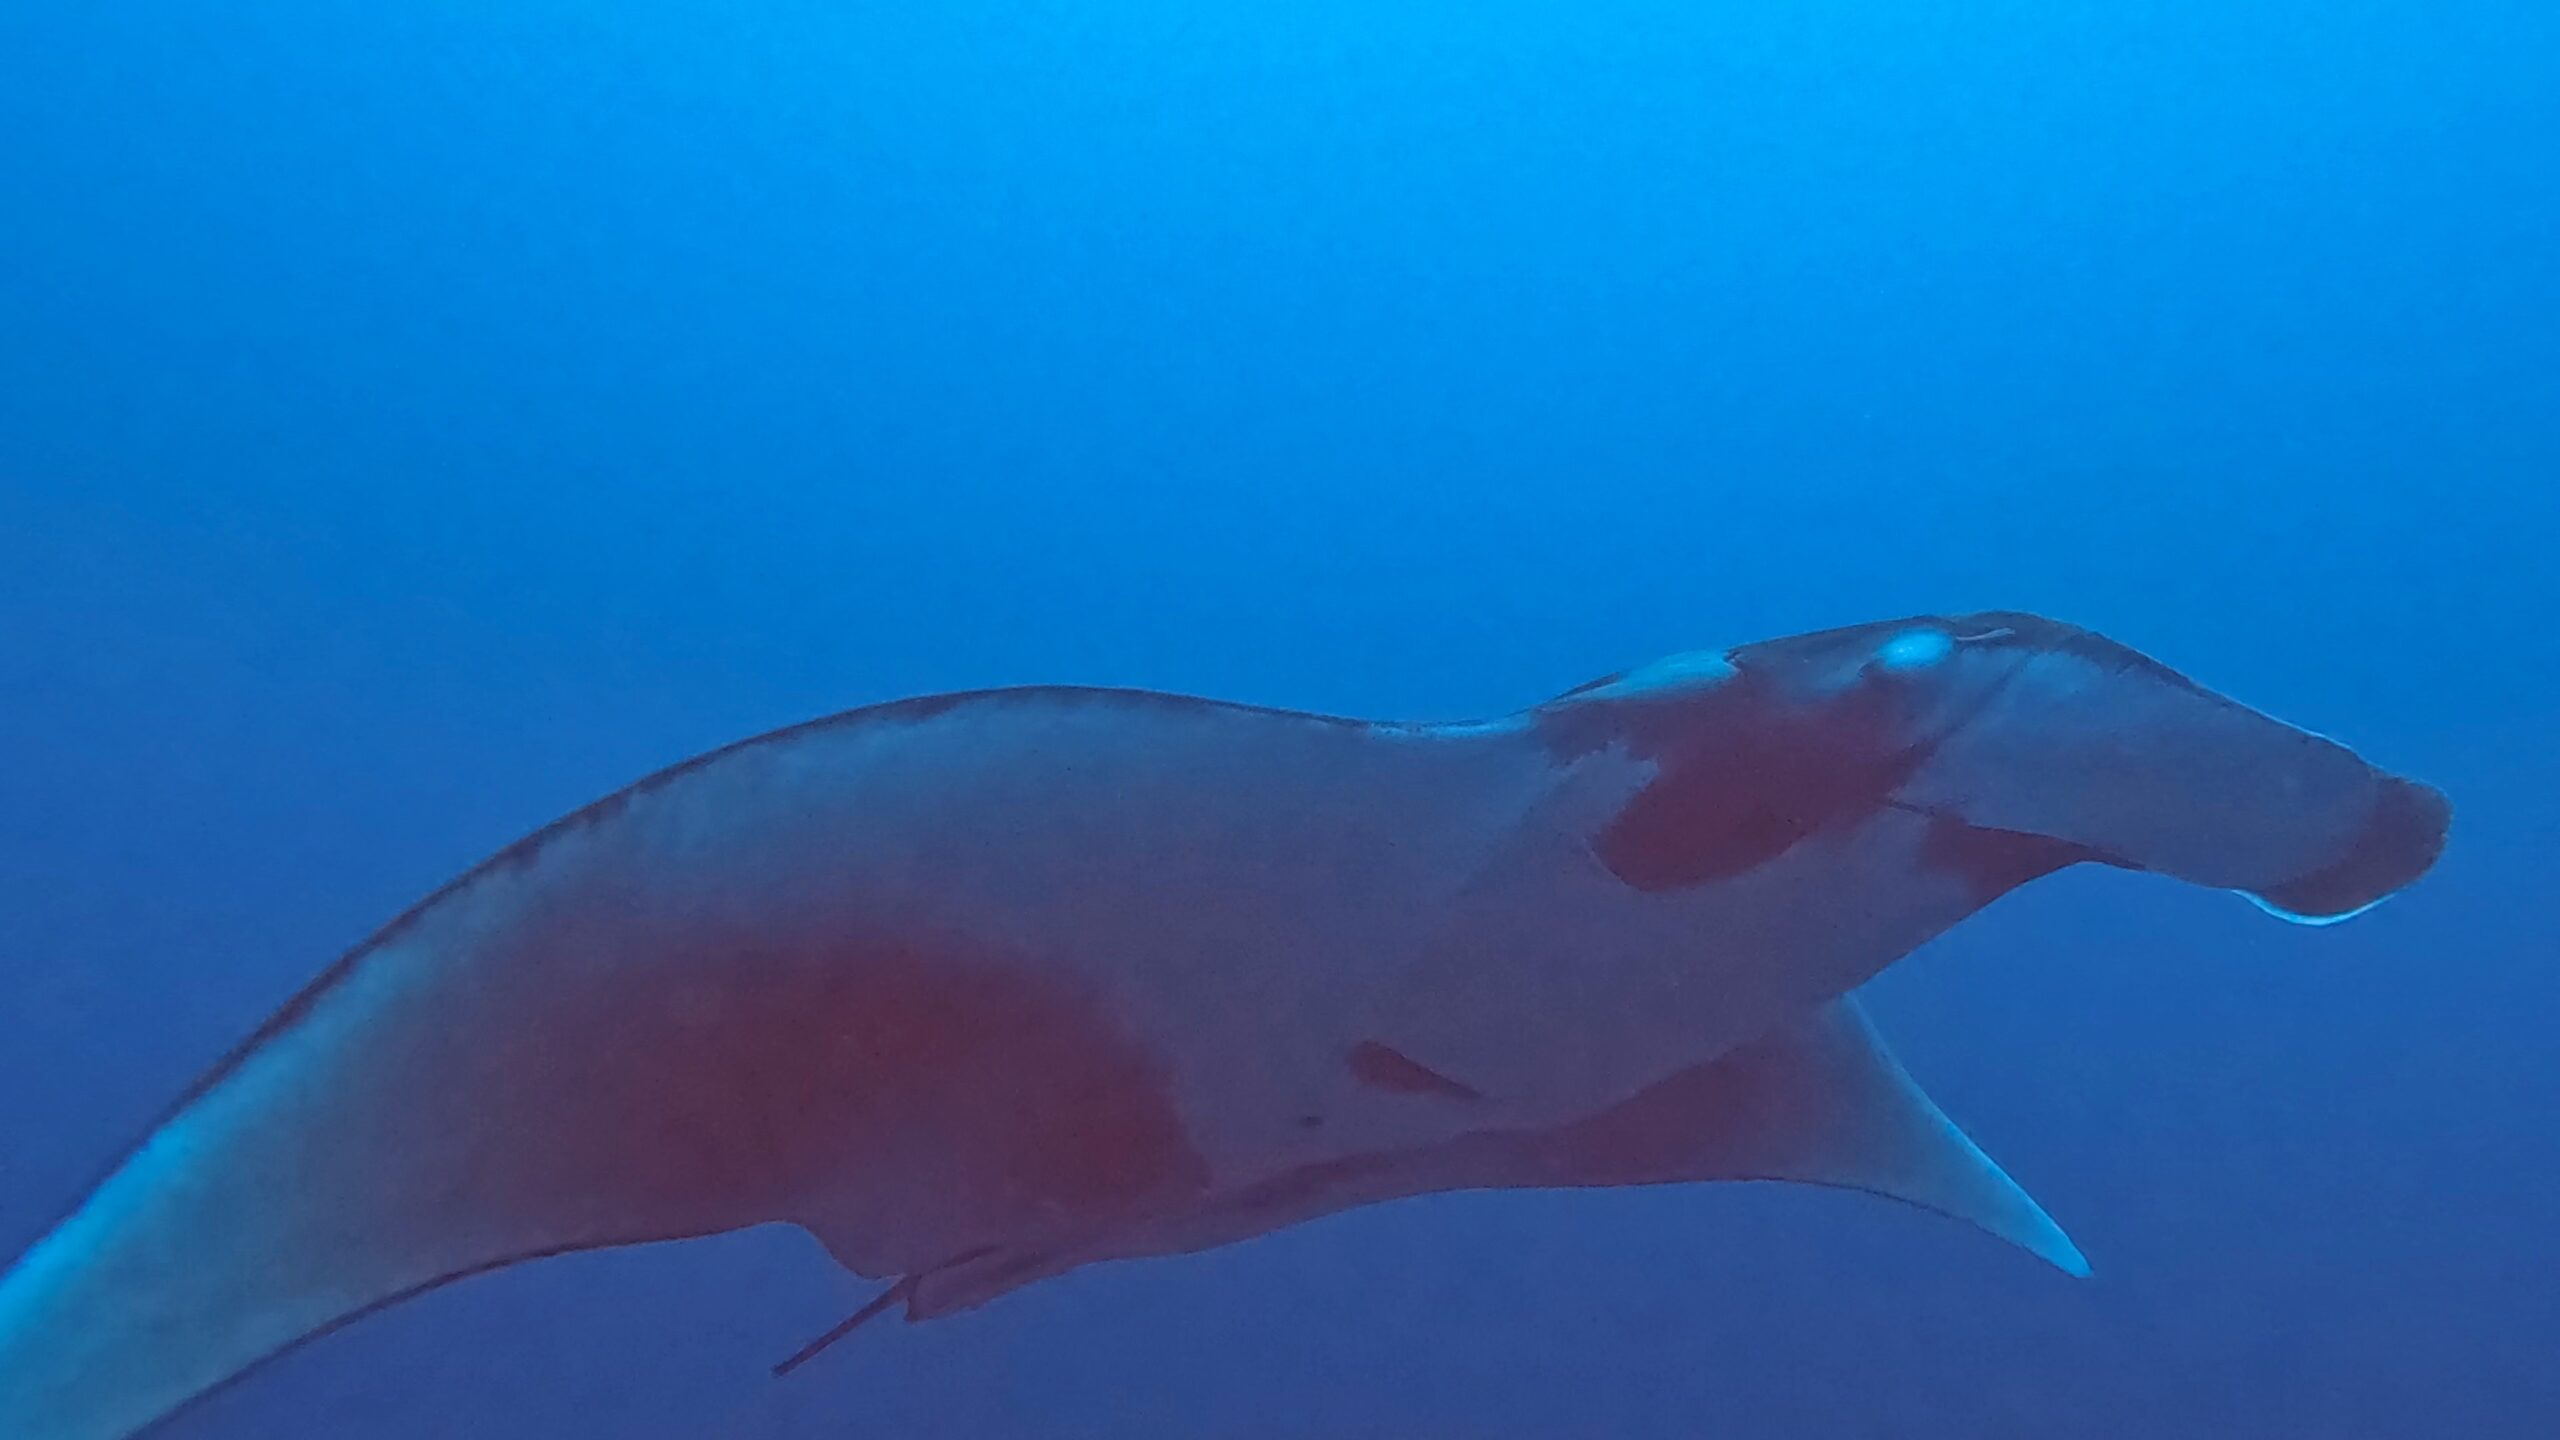 Scuba Diving in Cocos Island: Unsurpassed Marine Life